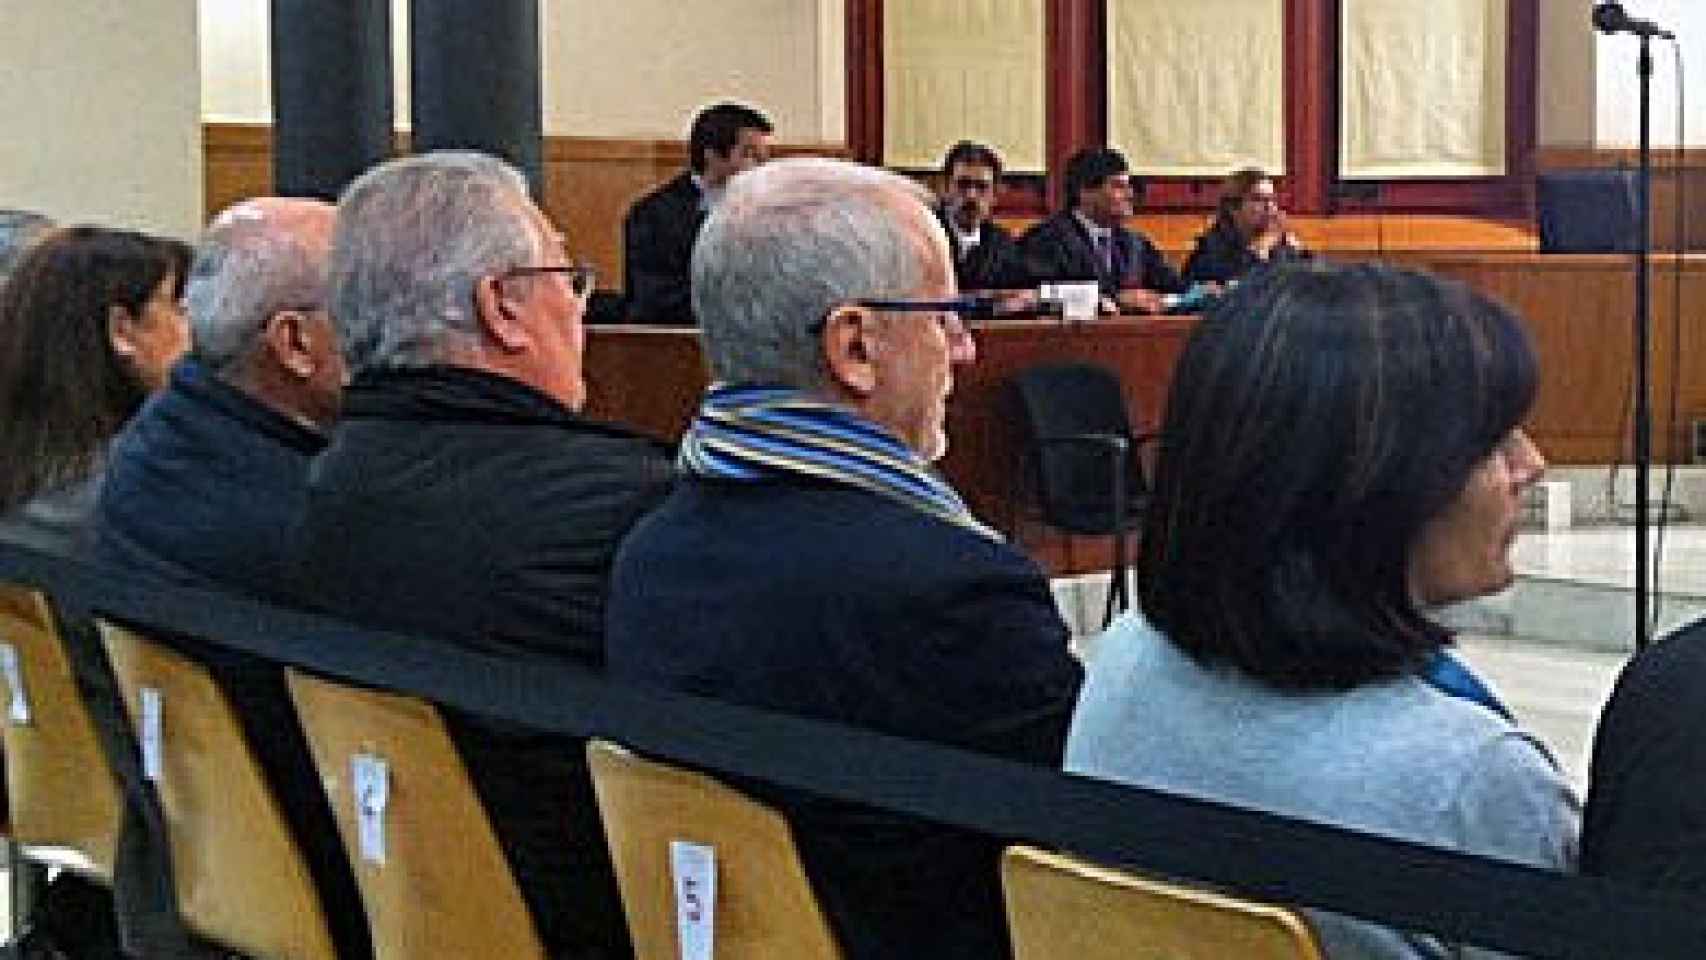 Los siete acusados en el ‘caso Pallerols’, durante la vista oral el 8 de enero de 2013